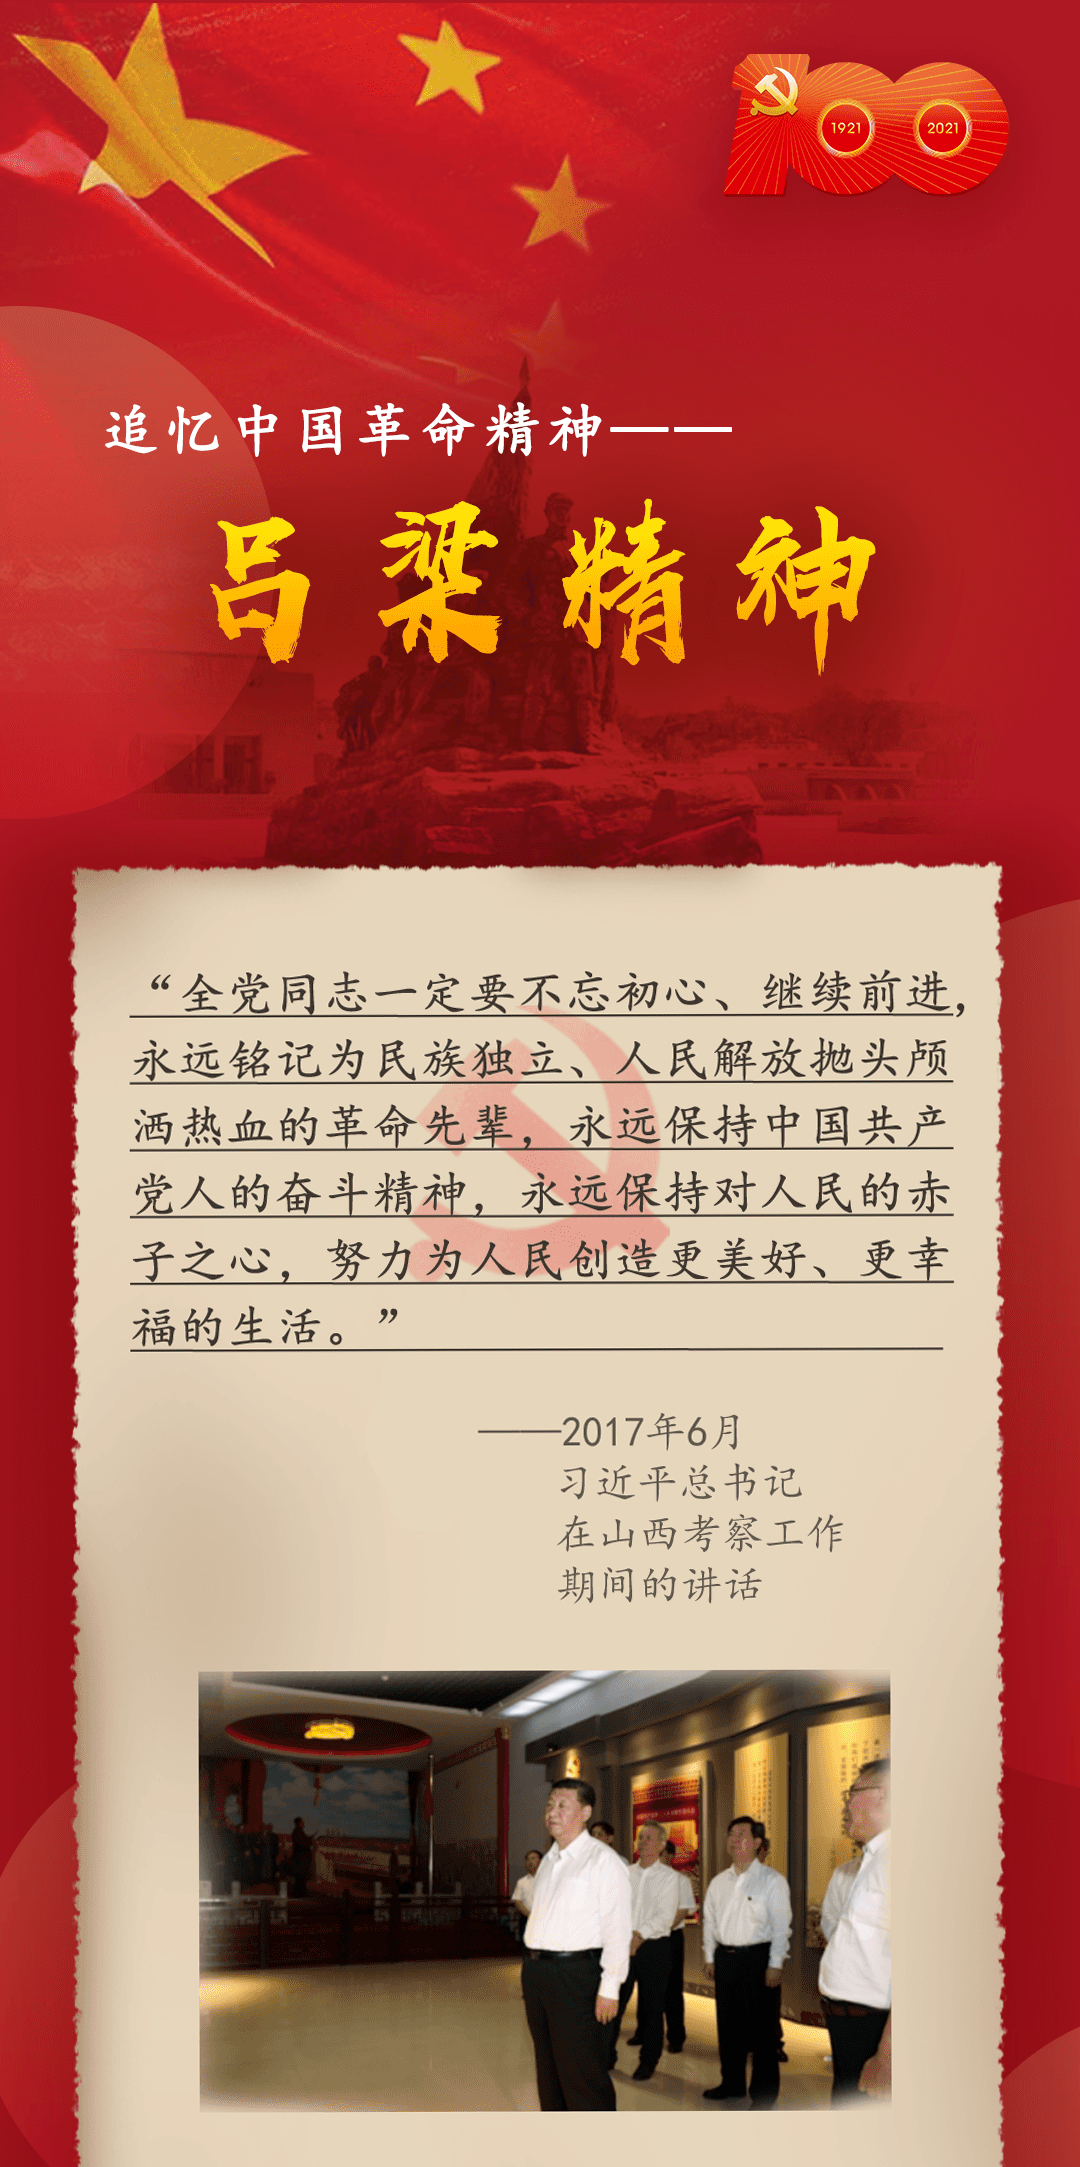 回望百年 | 追忆中国革命精神:吕梁精神